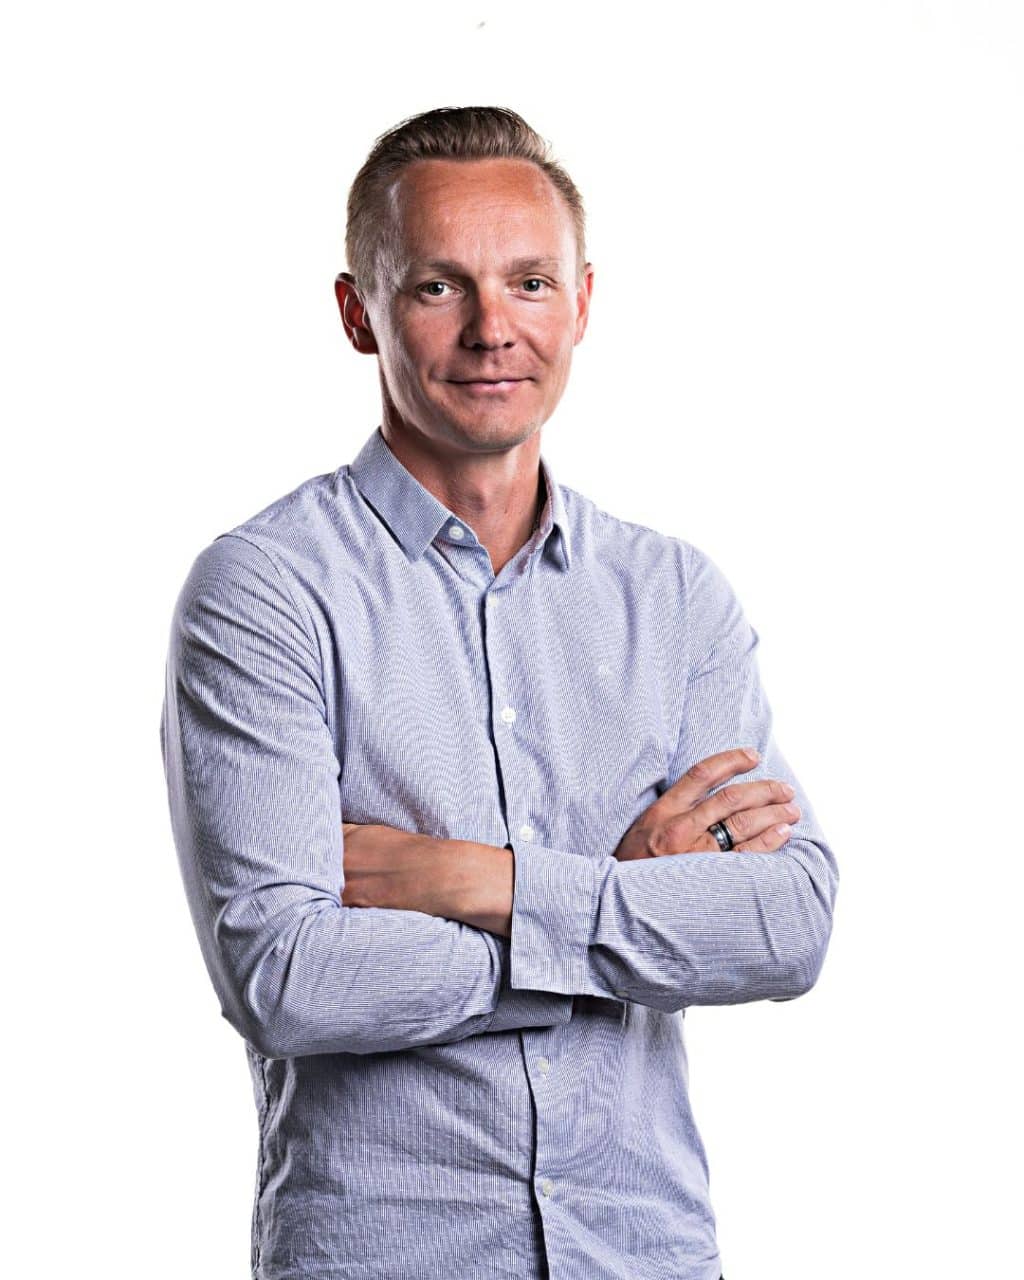 Petter Kukkonen on entinen Suomen yhdistetyn maajoukkueen päävalmentaja, kirjailija, YLE:n asiantuntija, puhuja ja perheenisä.